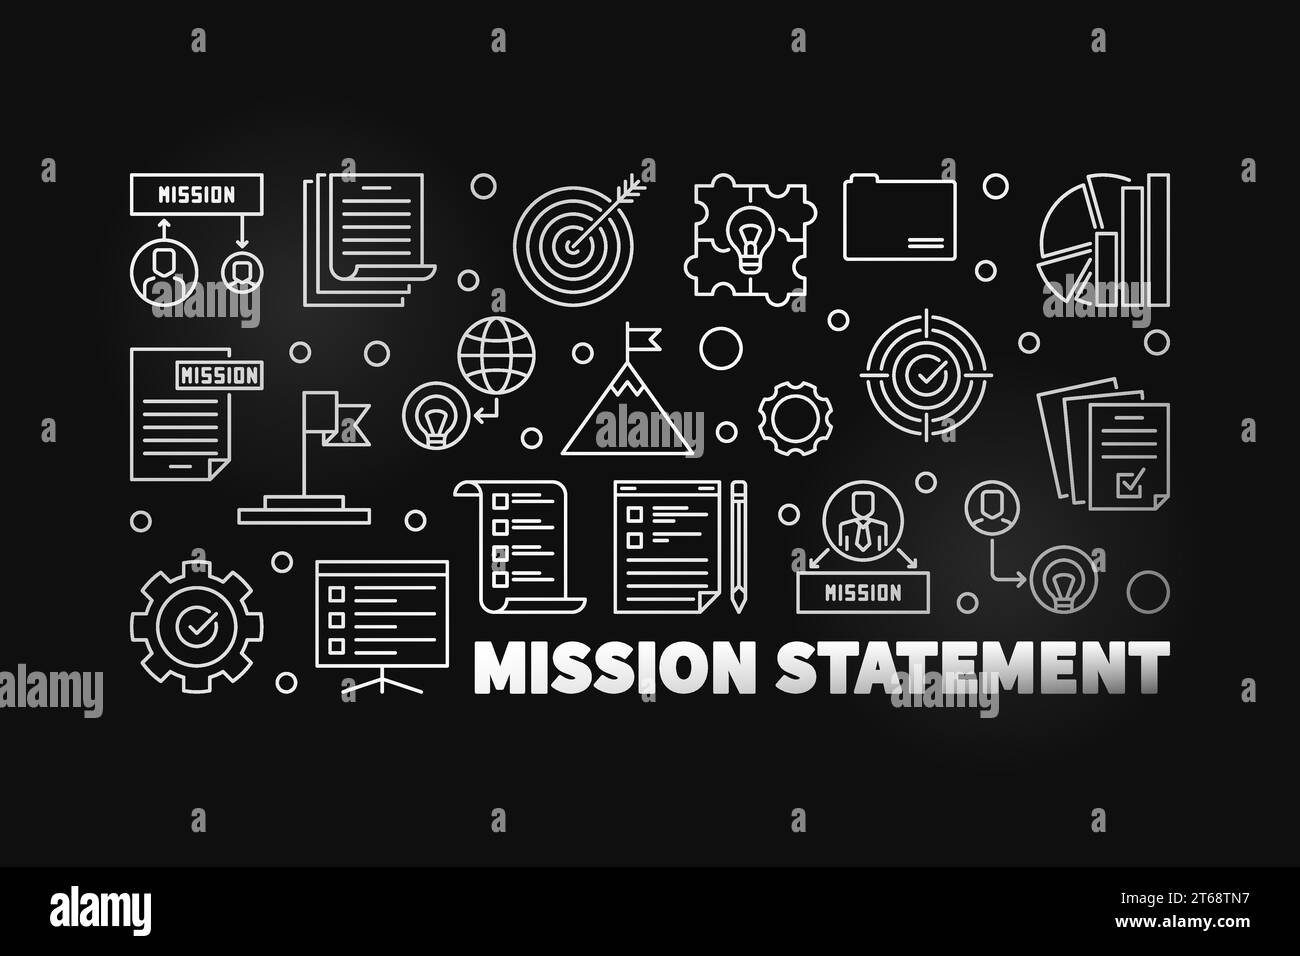 Vector Mission Statement modern outline illustration or banner on dark background Stock Vector